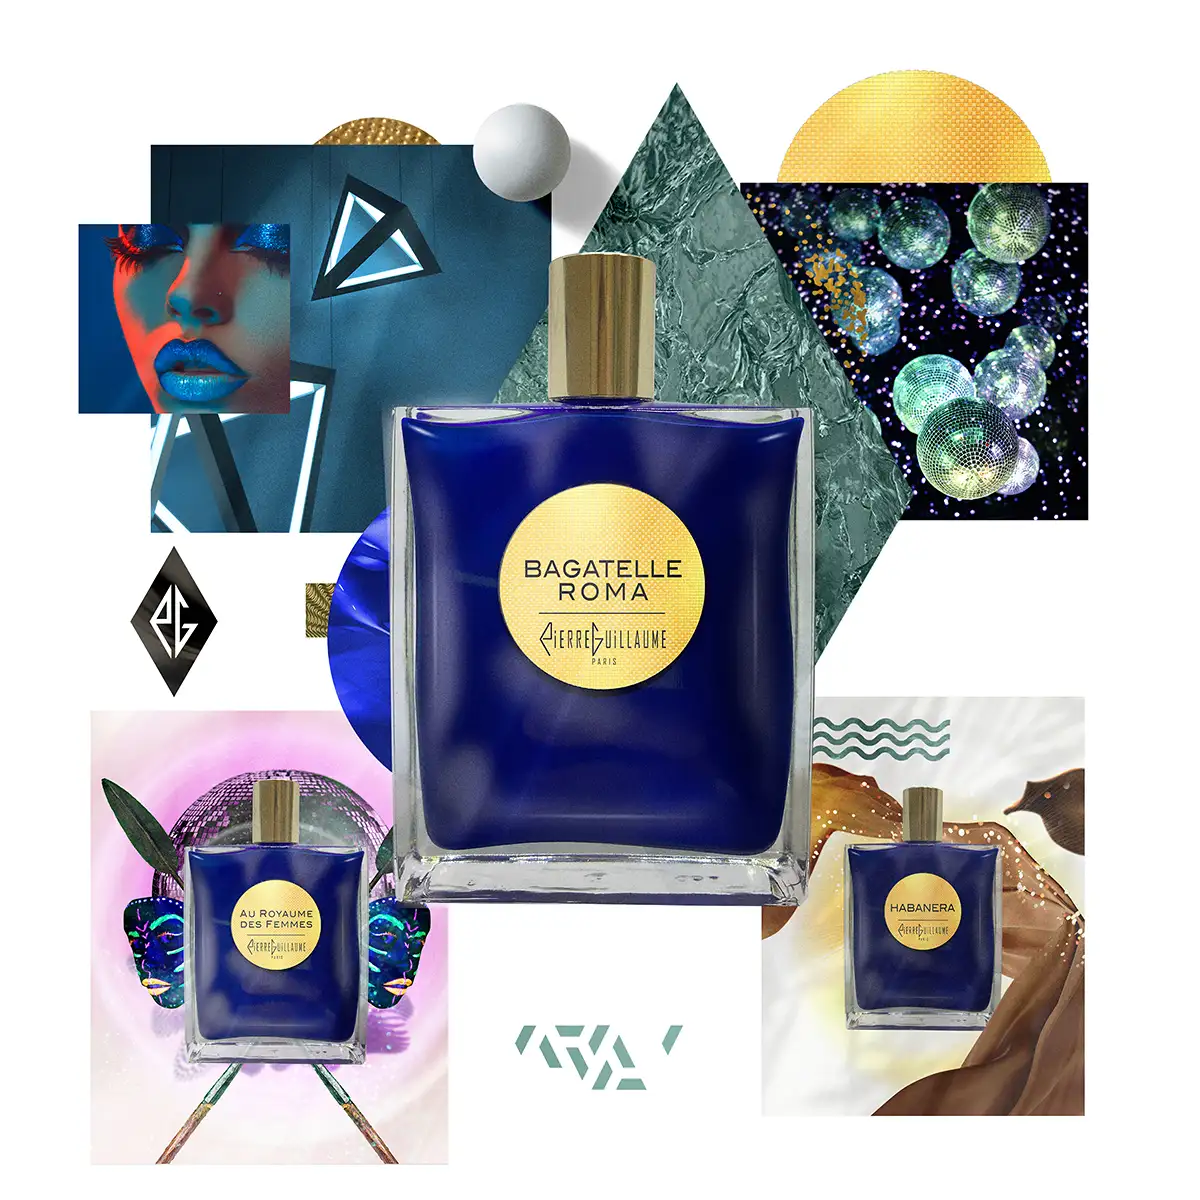 Pierre Guillaume Paris - Pierre Guillaume Contemplation, parfums d'exception de haute parfumerie, bouteille bleue Klein - 100ml - 50ml.